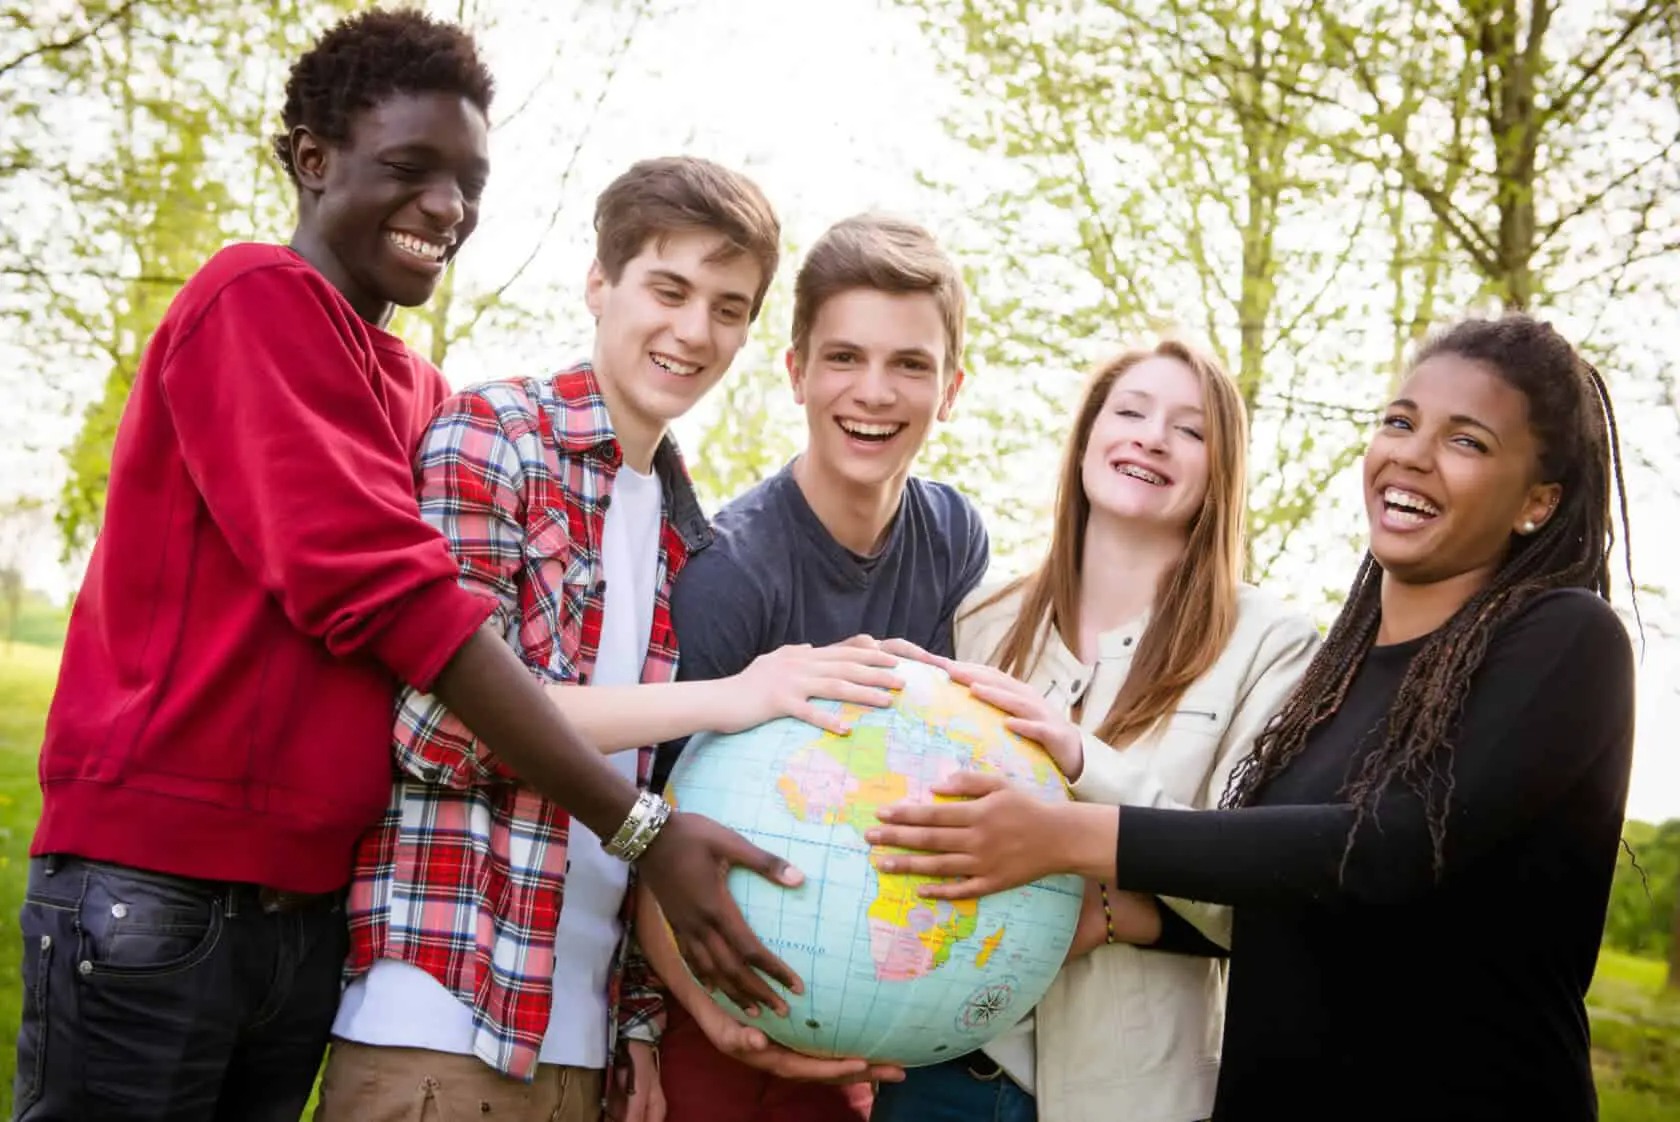 Udvekslingsstudentoplevelsen: En Rejse til Selvopdagelse og Kulturel Berigelse